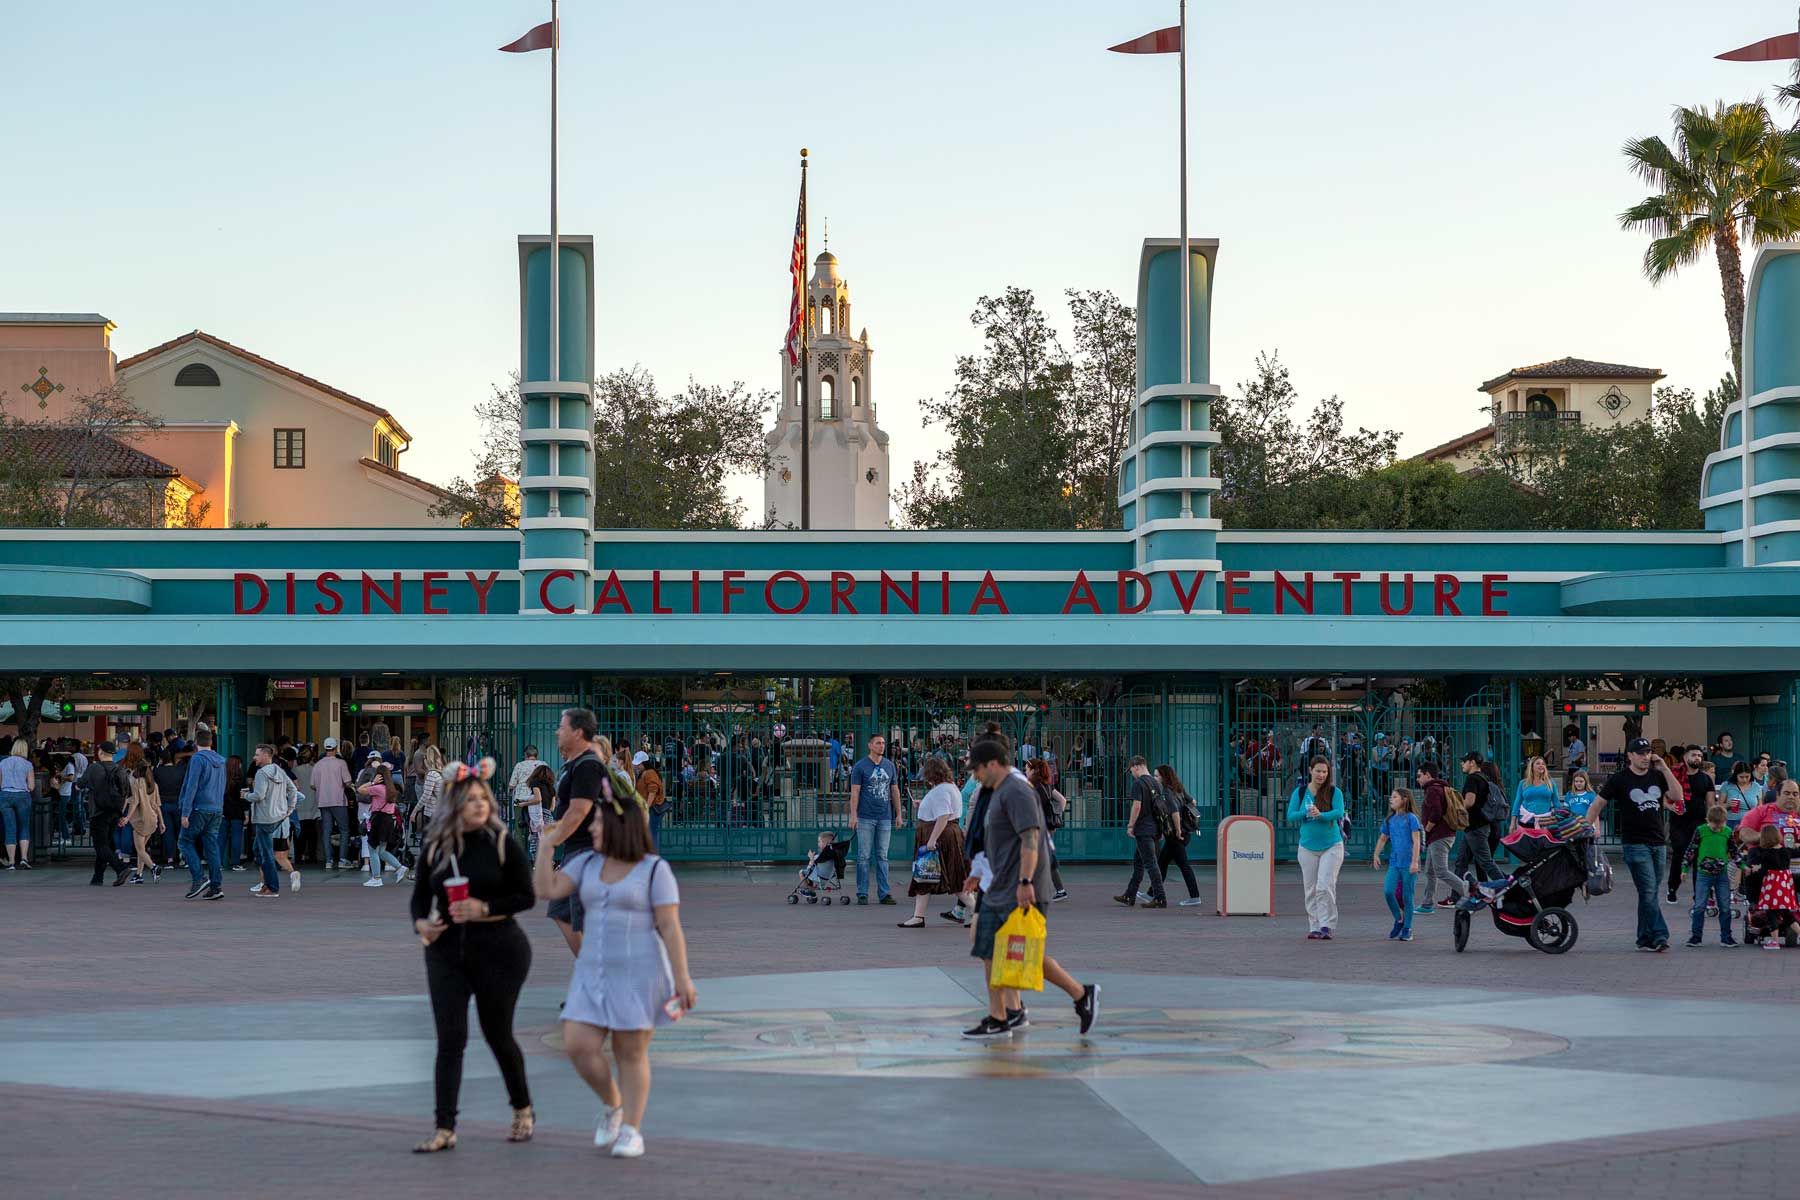 სტუმრები დაესწრებიან Disney California Adventure თემა პარკს, 2020 წლის 25 თებერვალს, ანაჰეიმში, კალიფორნია. ბობ აიგერი, რომელიც დისნეის გენერალური დირექტორი იყო 2005 წლიდან, შეიცვალა ბობ ჩაპეკით, რომელიც მანამდე ხელმძღვანელობდა კომპანიას